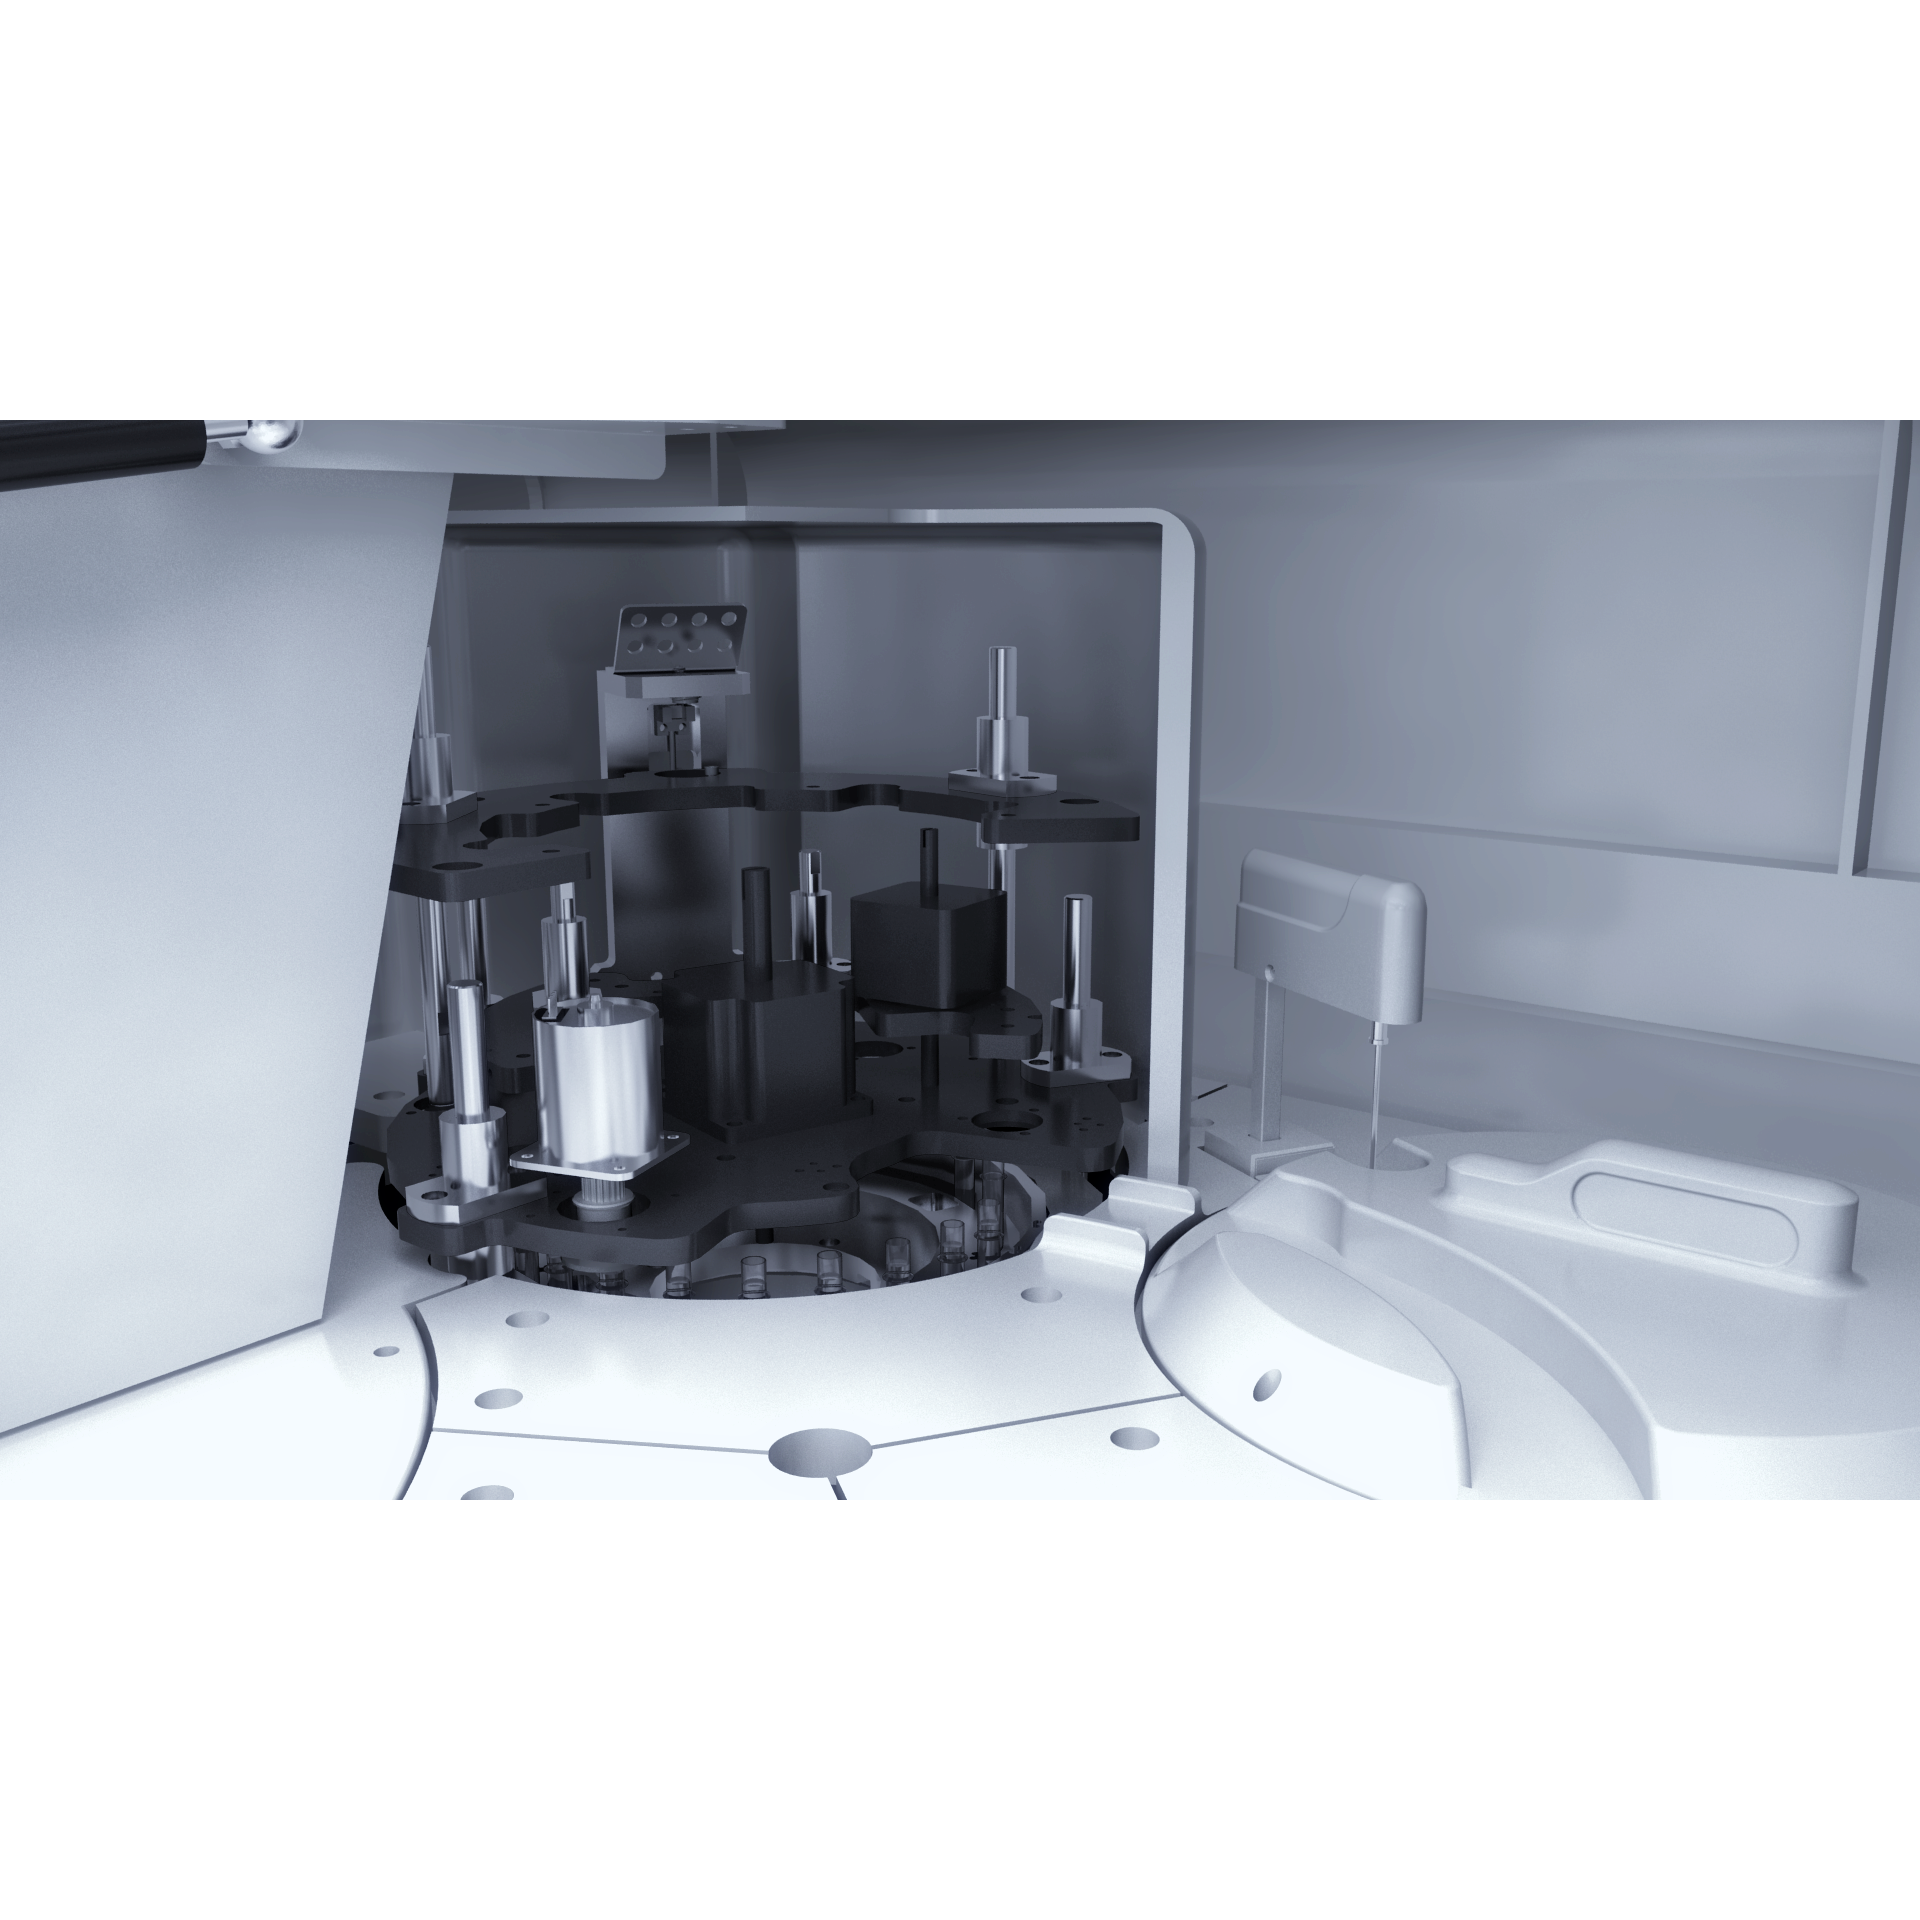 科华生物Polaris i2400全自动化学发光免疫分析系统